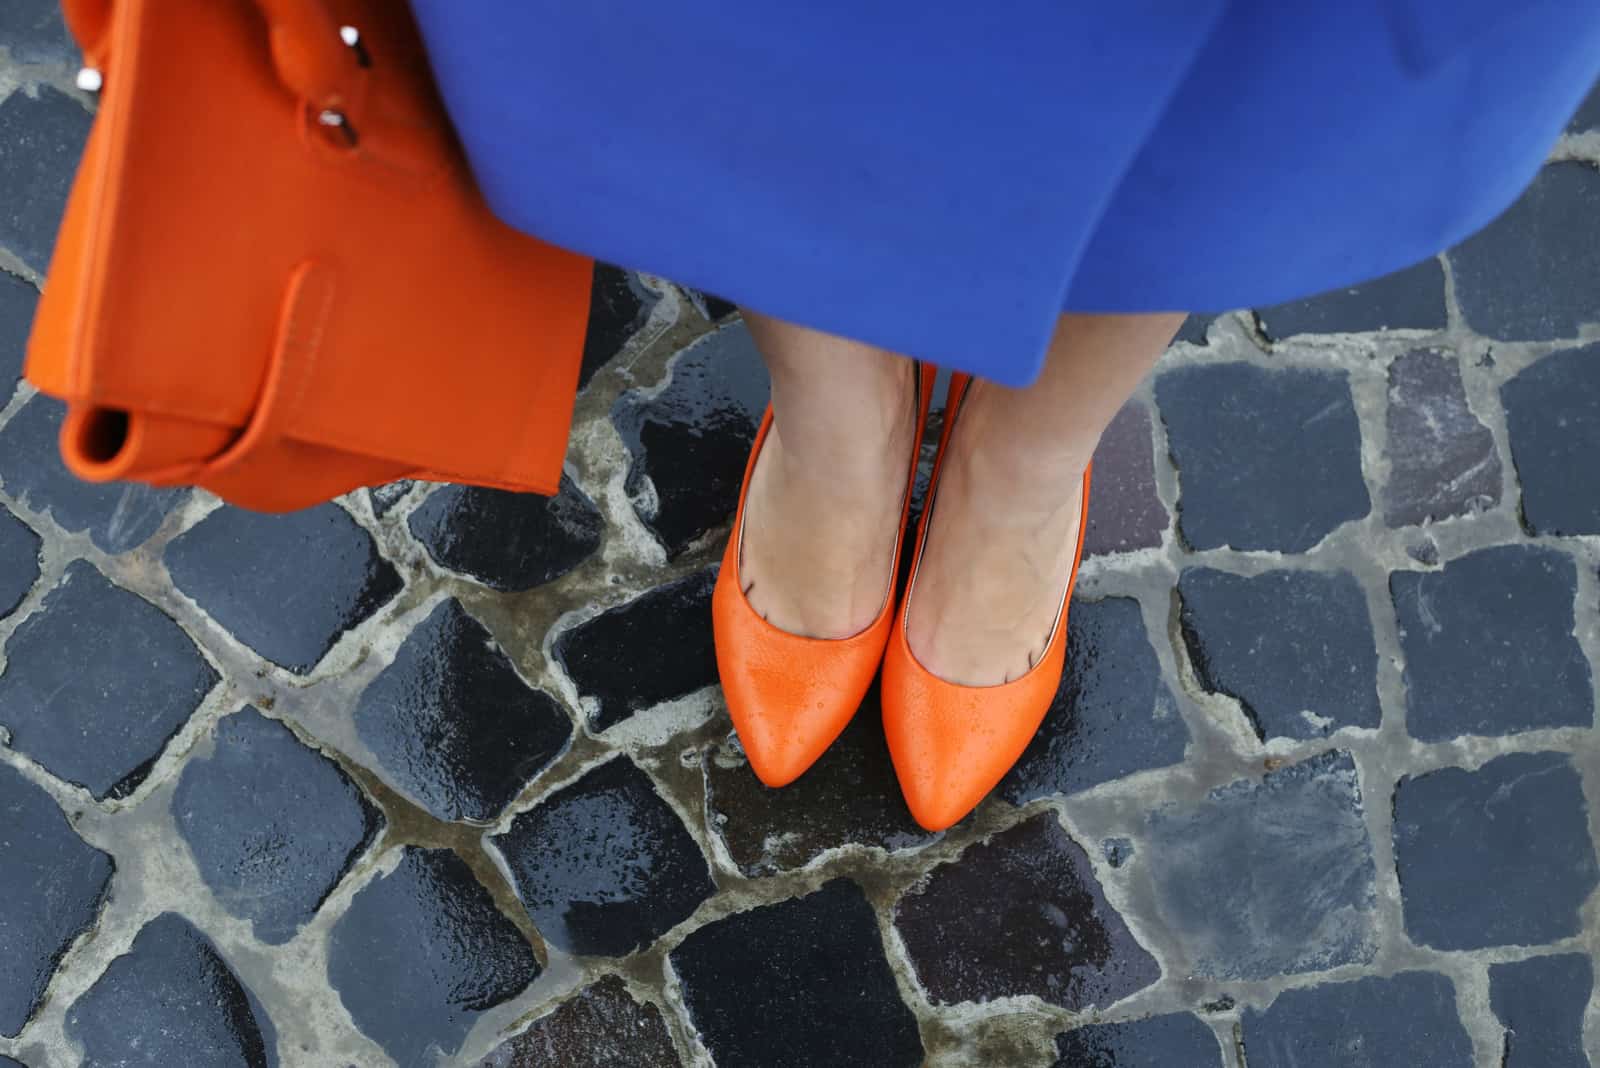 femme avec des chaussures orange et une robe bleue